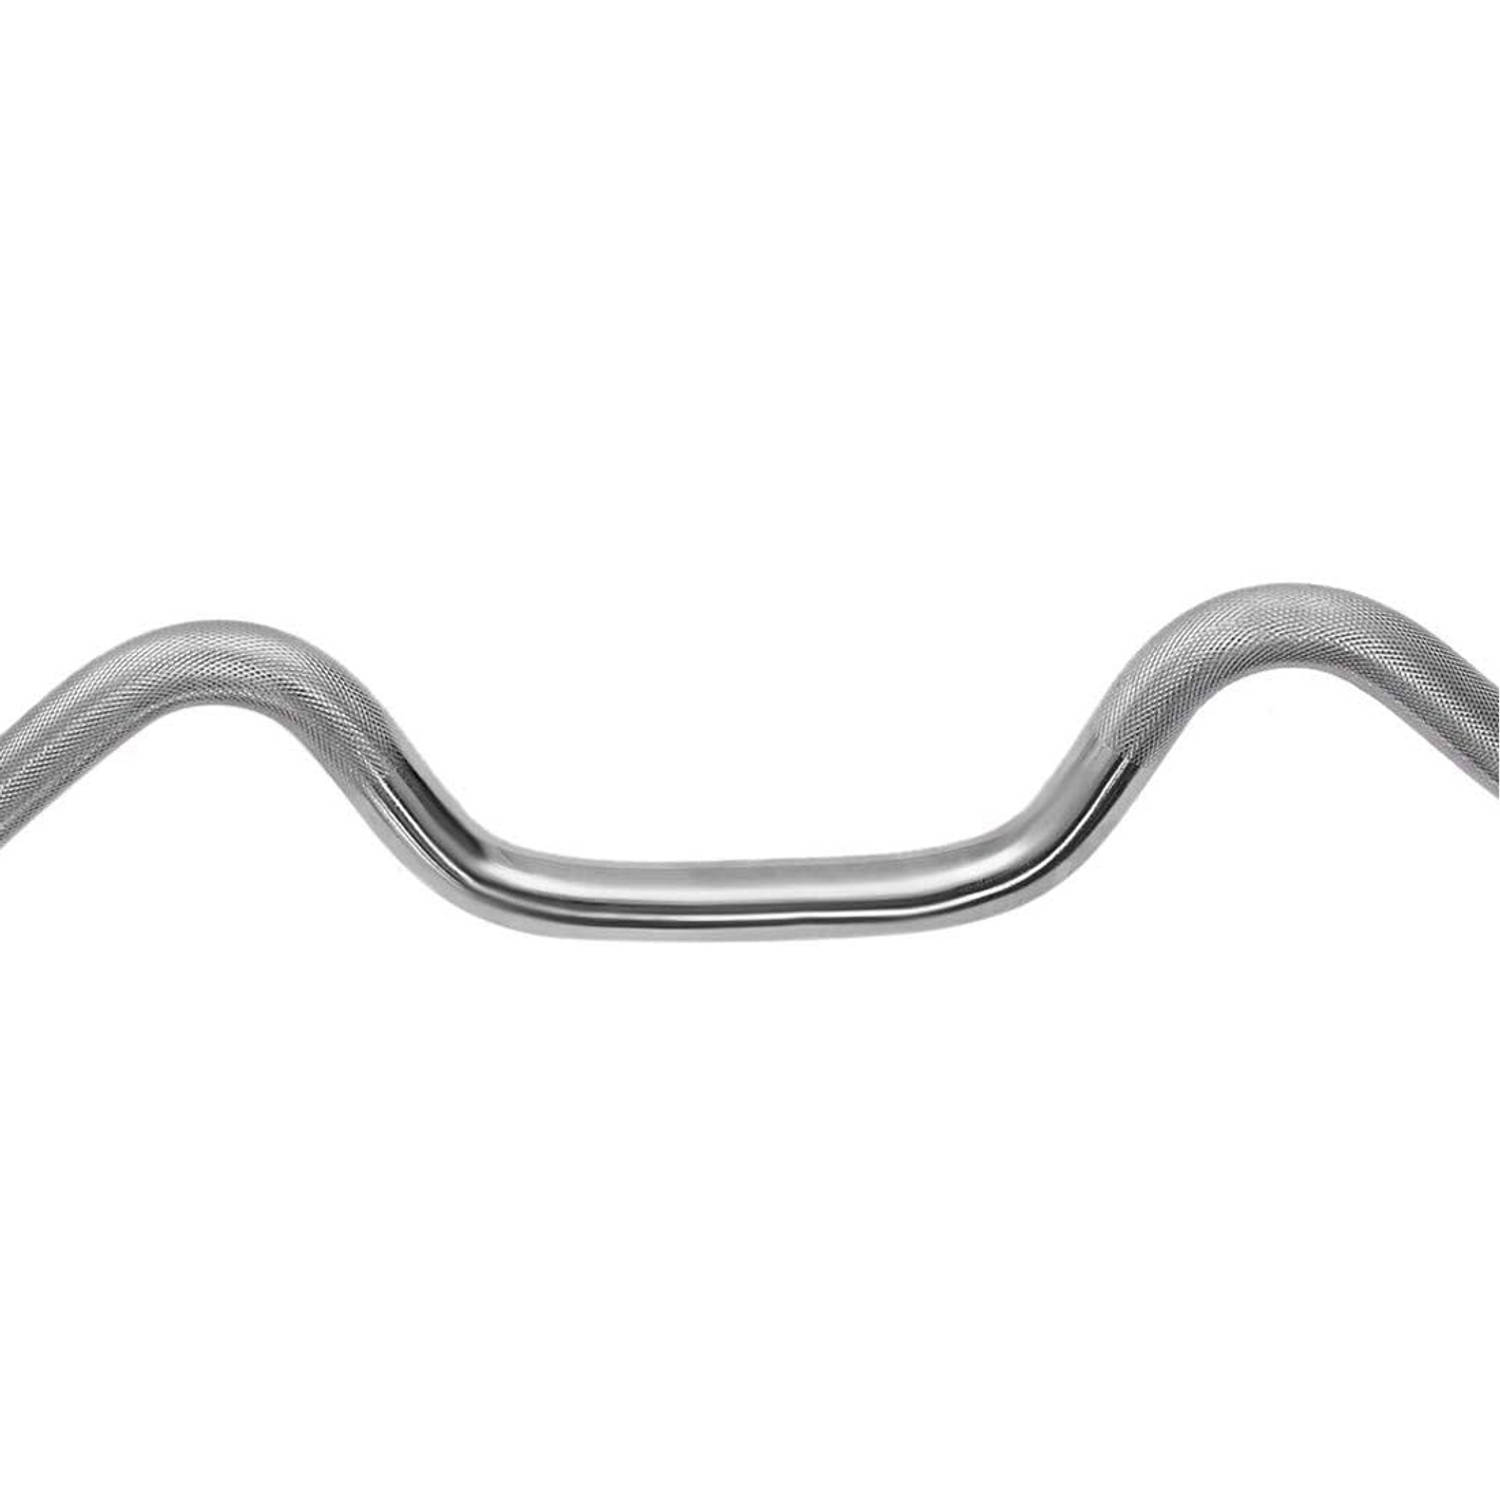 te rechtvaardigen Mysterie toewijding NordFalk olympische curl halterstang 120 cm x 30mm - Curlbar / curlstang  met veersluiting | Blokker